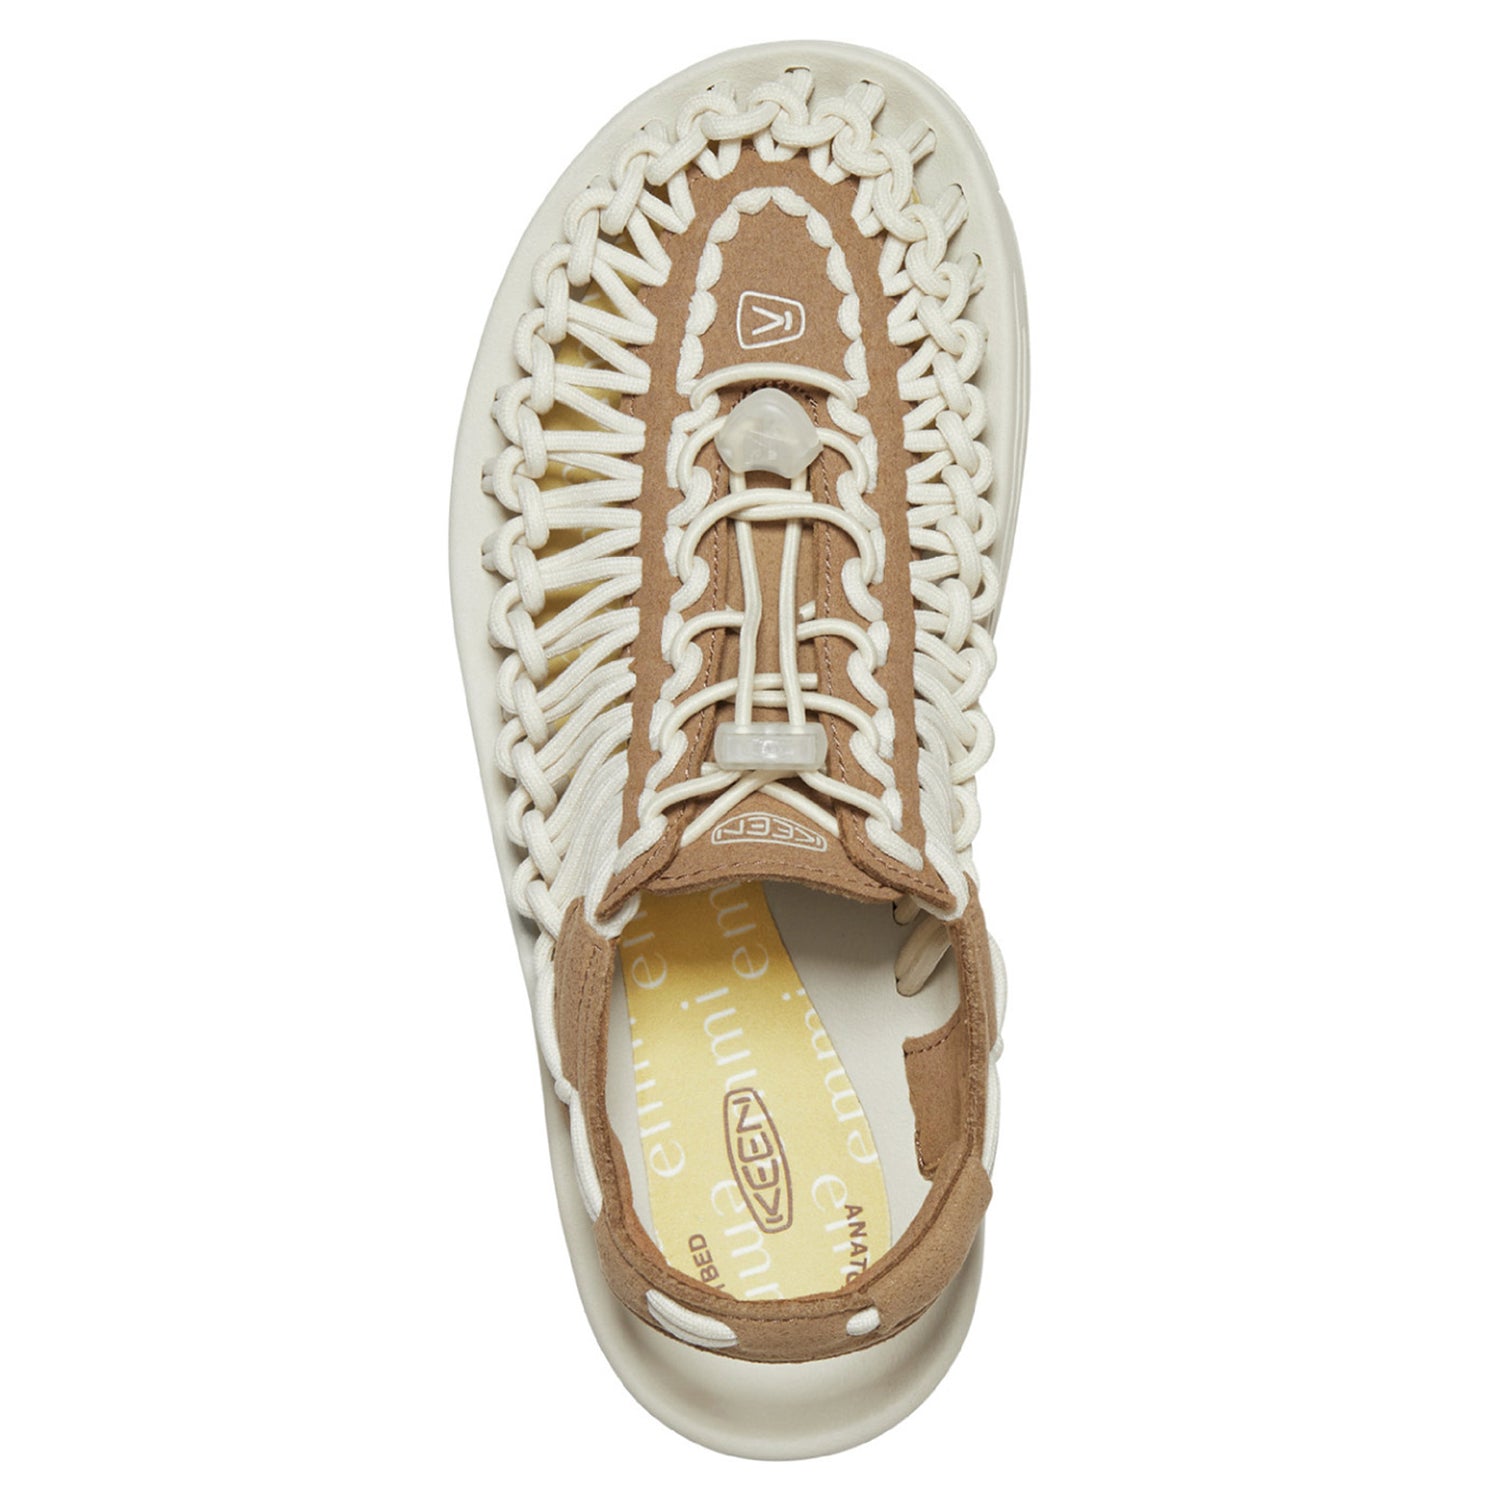 Peltz Shoes  Women's Keen Uneek Sandal Coconut/Birch 1026869